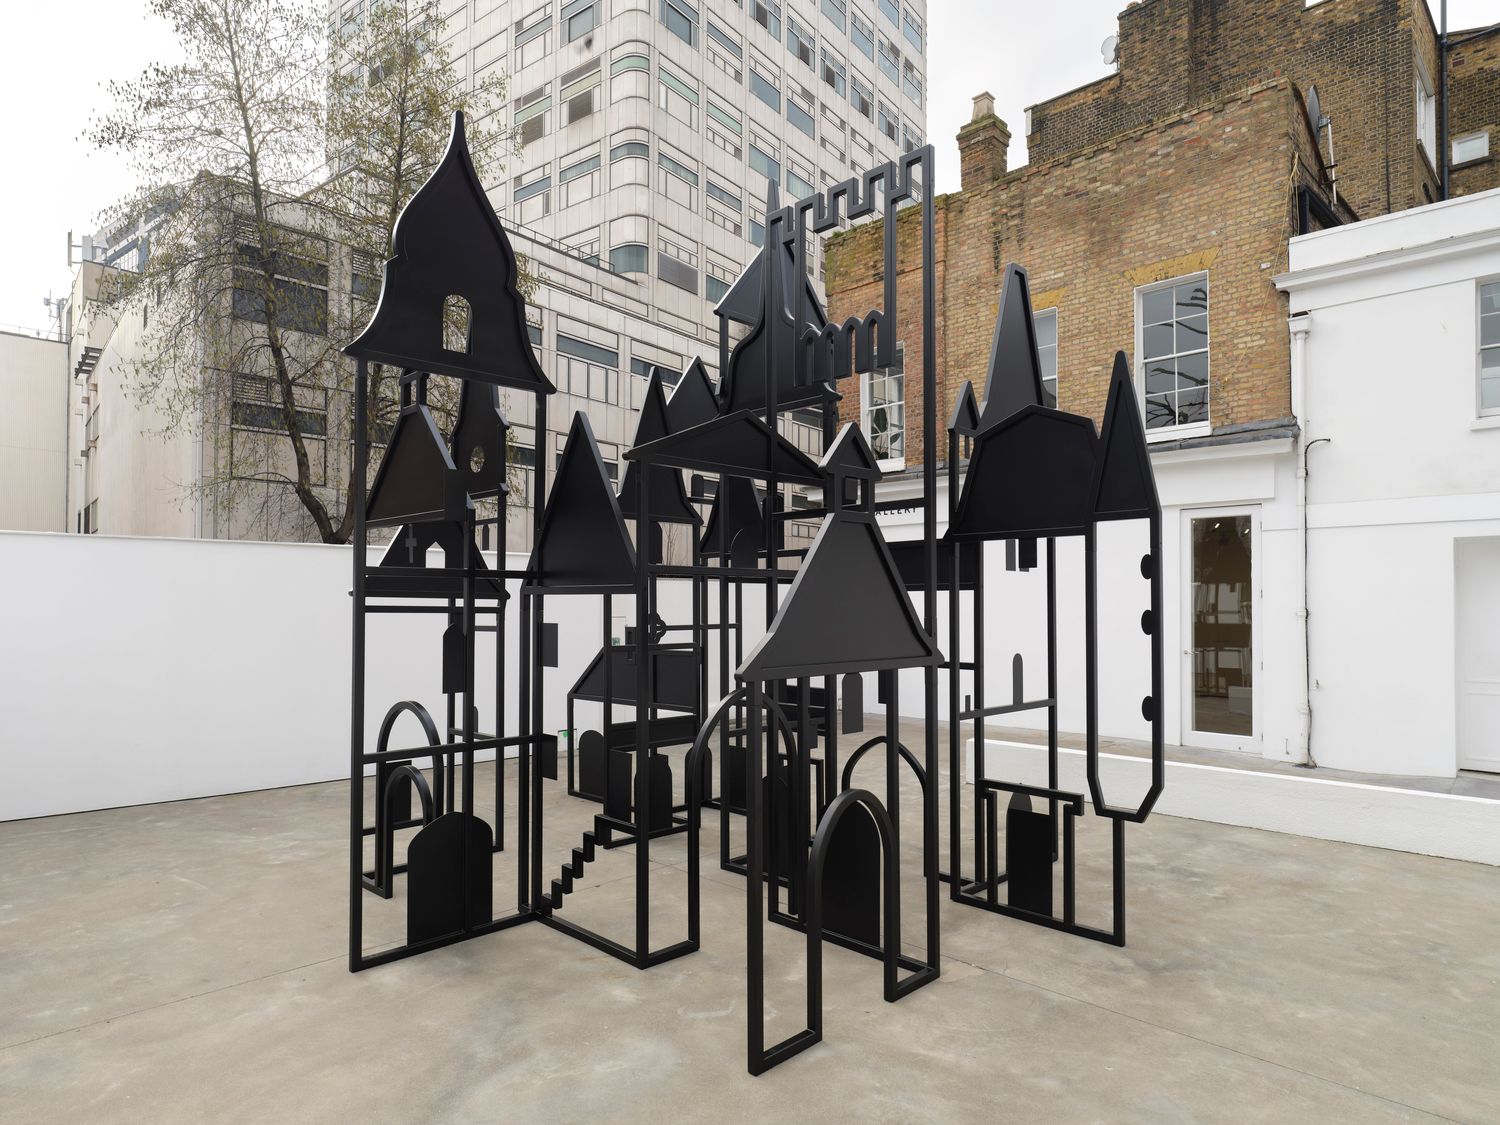 The Wick - Installation view:
Julian Opie, OP.VR@LISSON/London
©Julian Opie, Courtesy Lisson Gallery